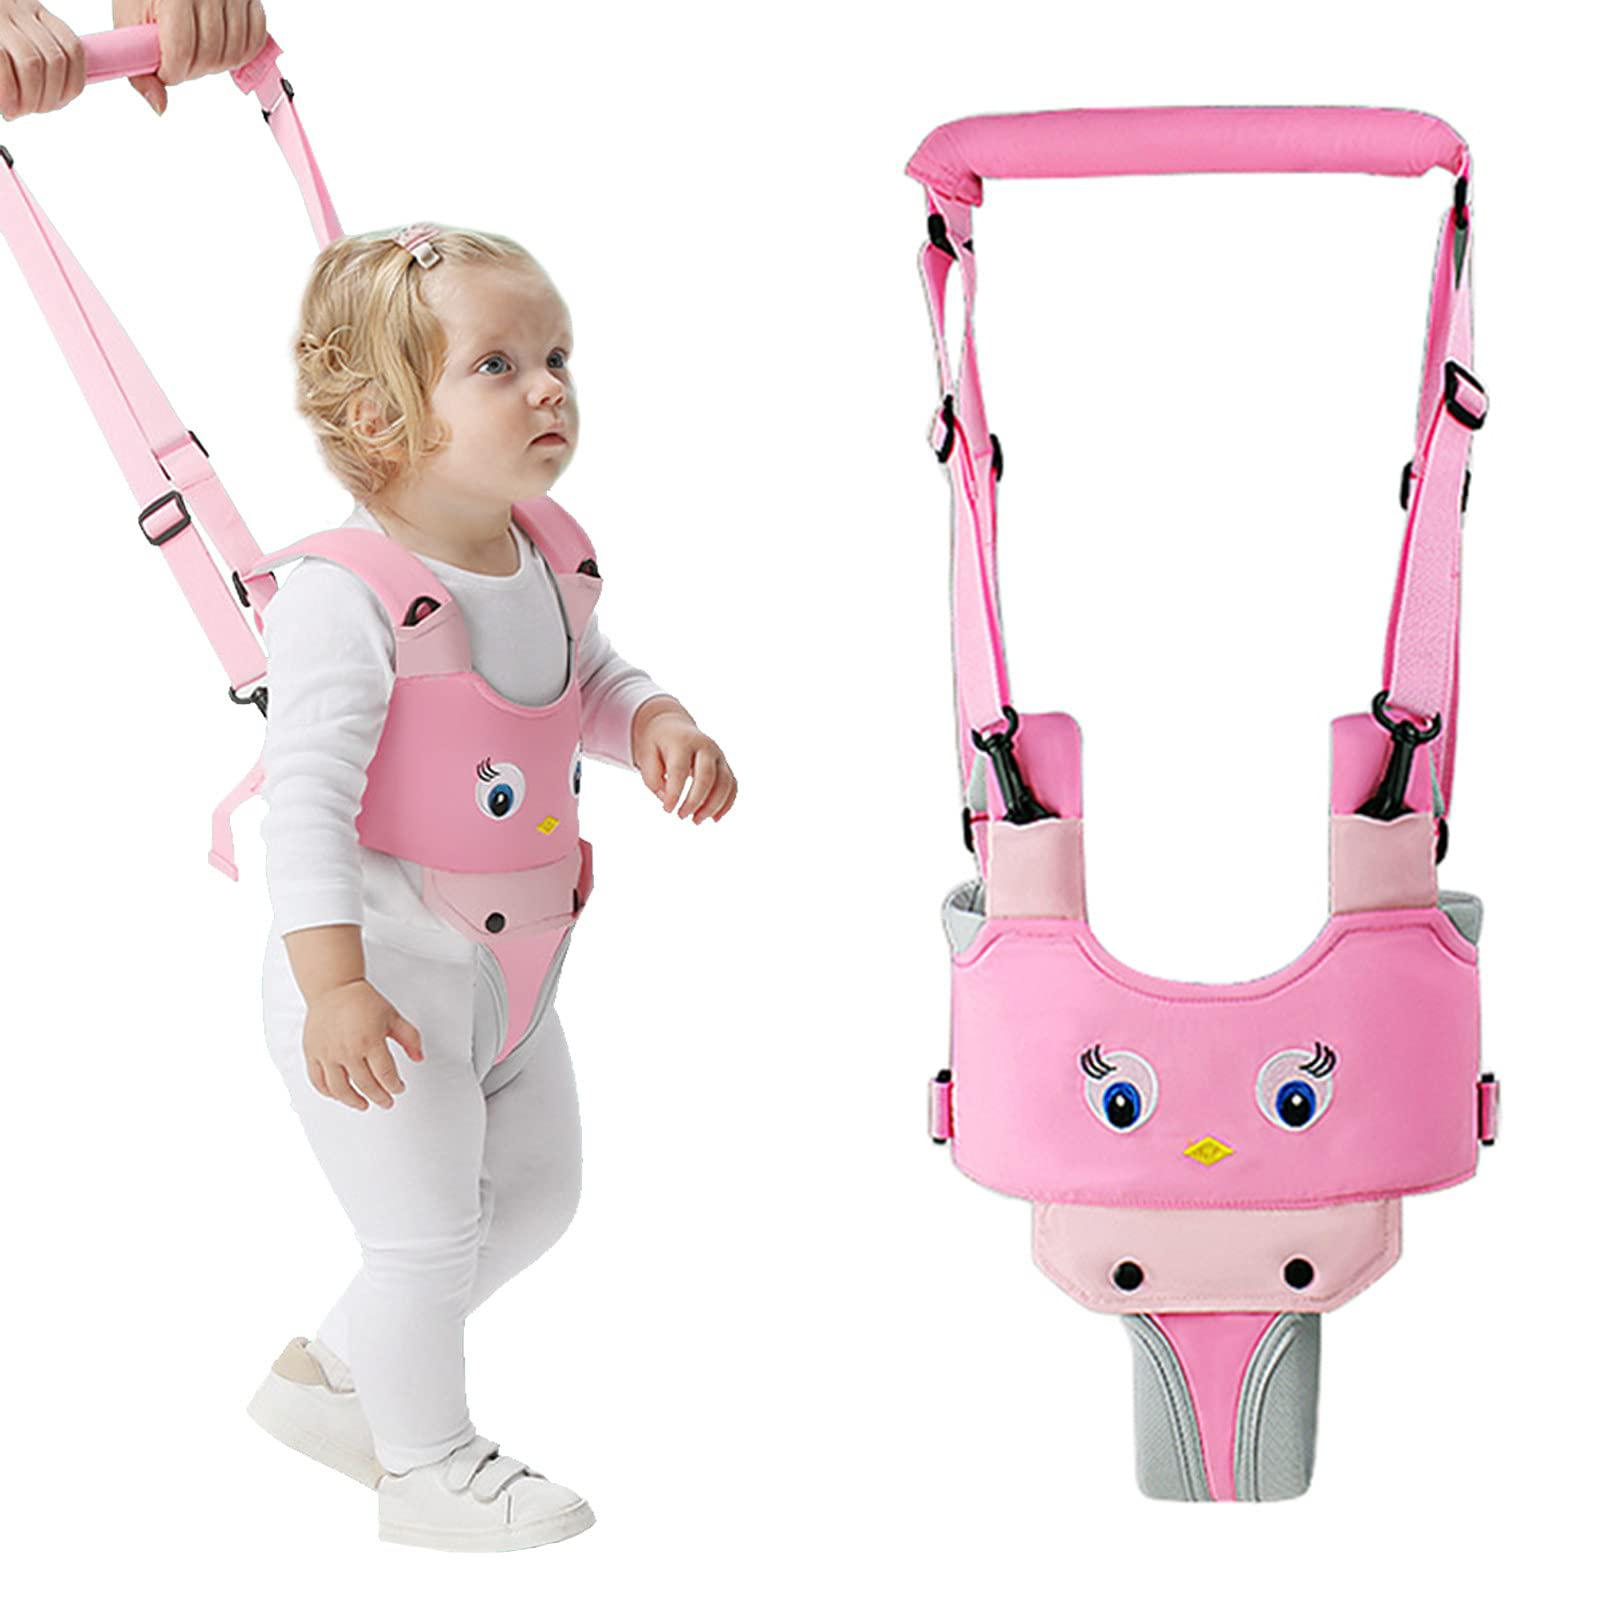 iulonee baby walker, handheld kids toddler walking harness helper assistant protective belt child activity walker adjustable 